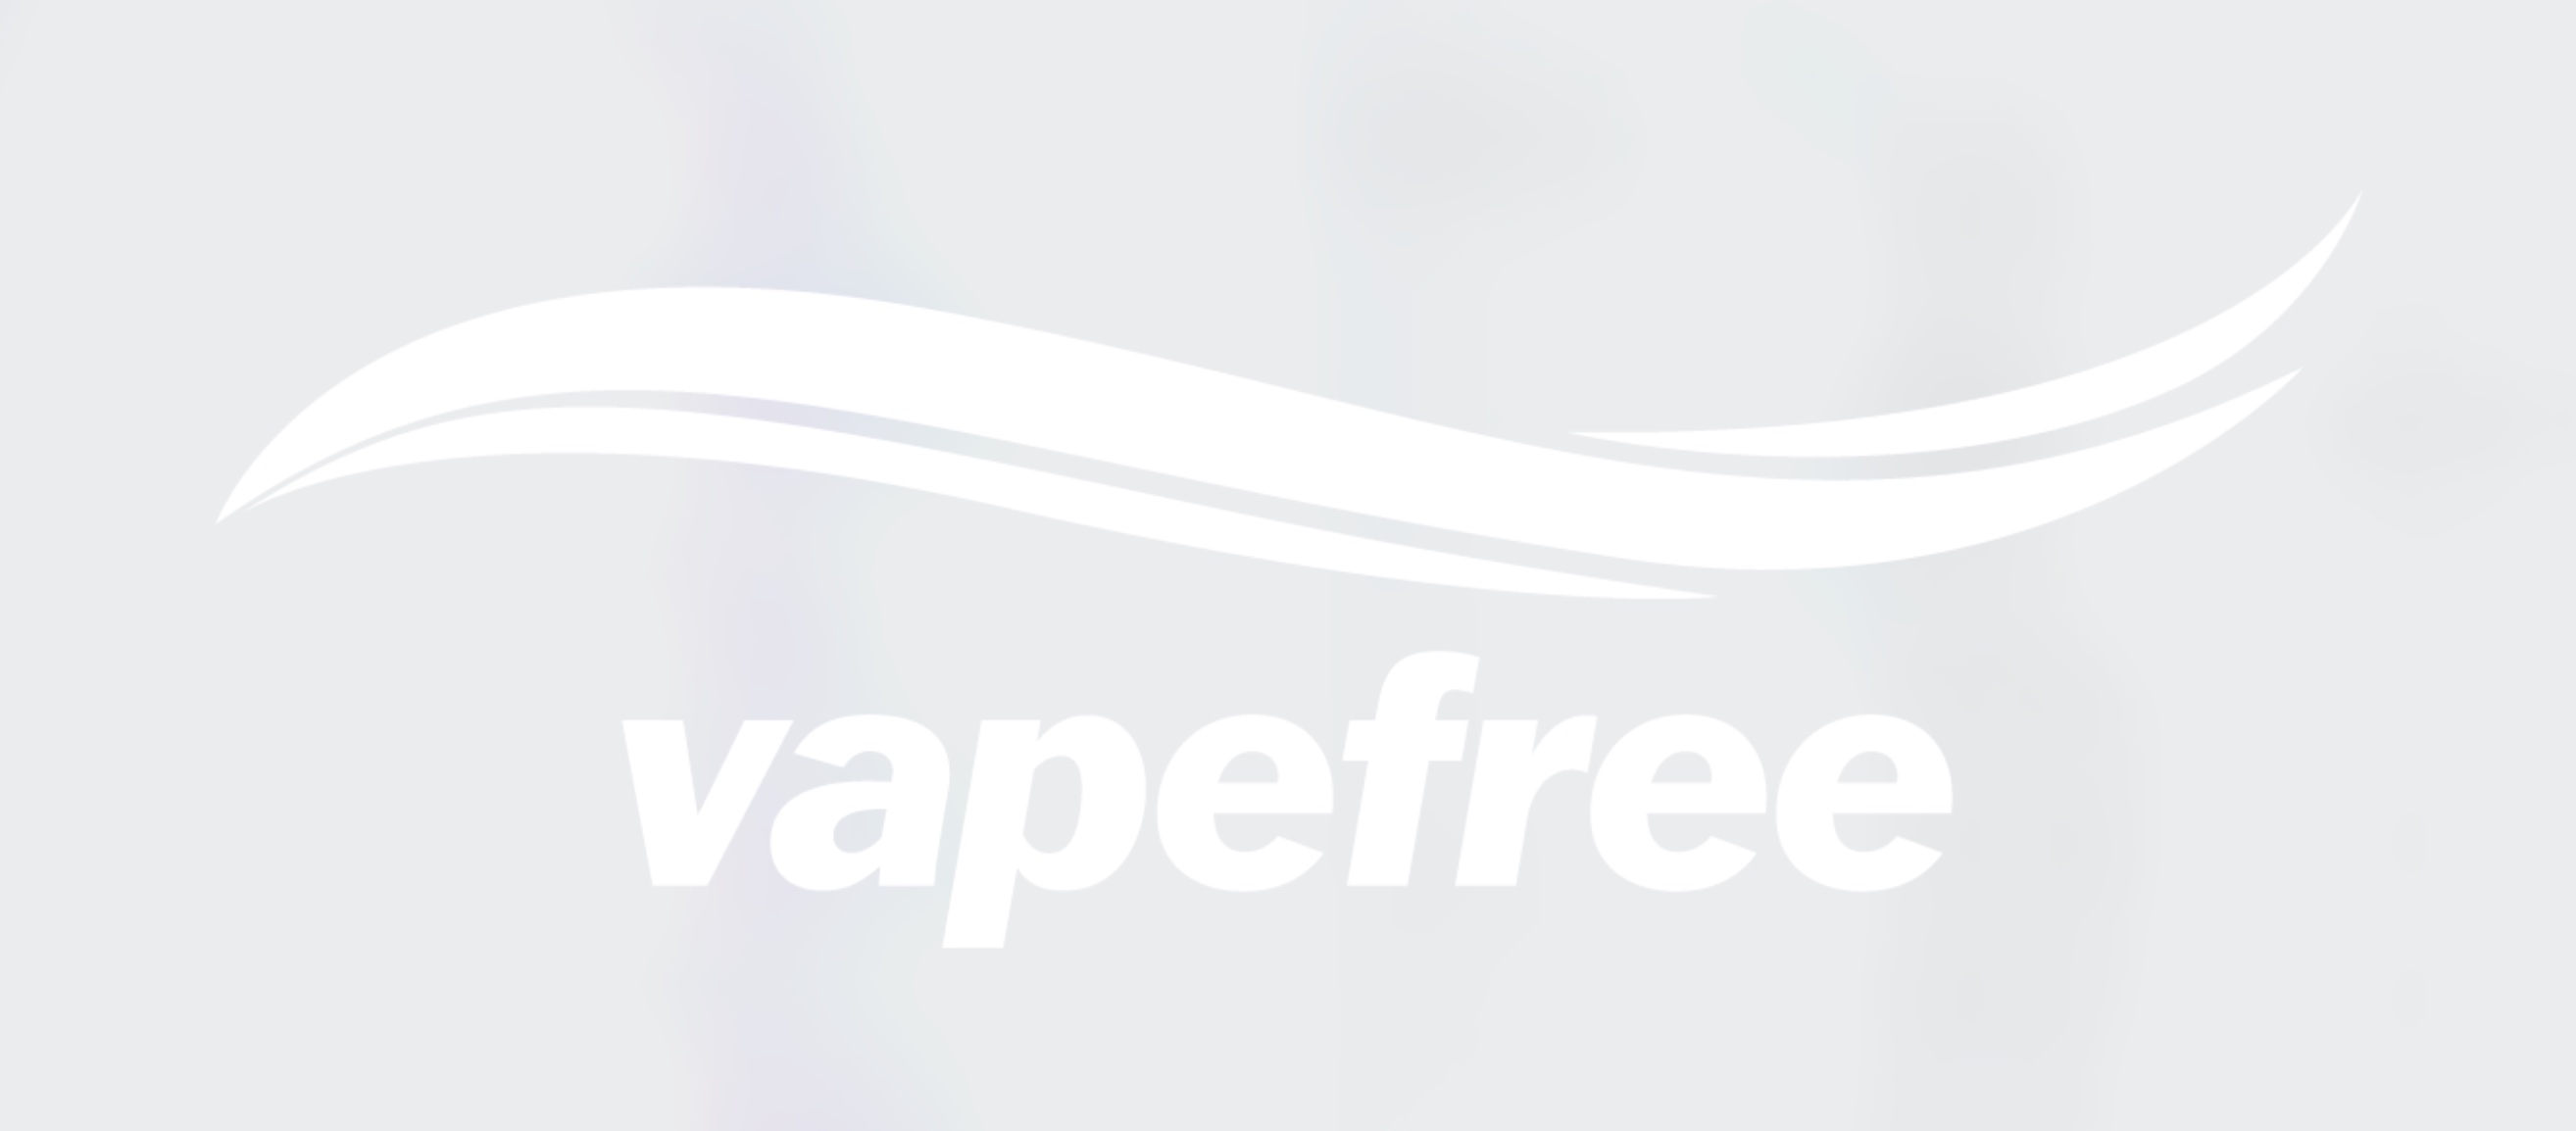 Vapefree logo reverse